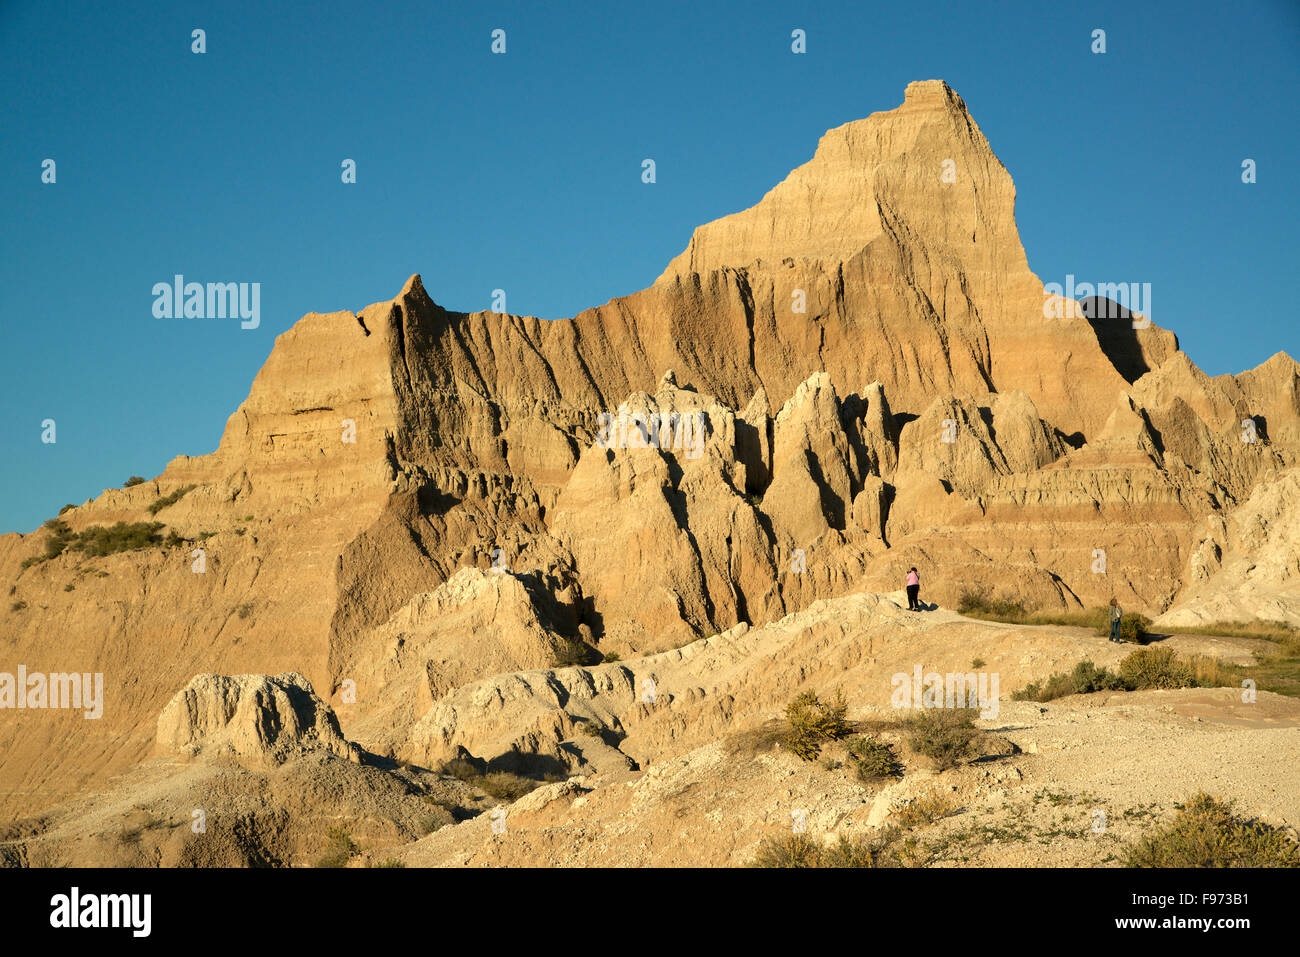 Szene des stark erodierten Buttes, Zinnen und Türme der Badlands Nationalpark. Geologische Formation zeigt Schichten von Sedimenten. Stockfoto